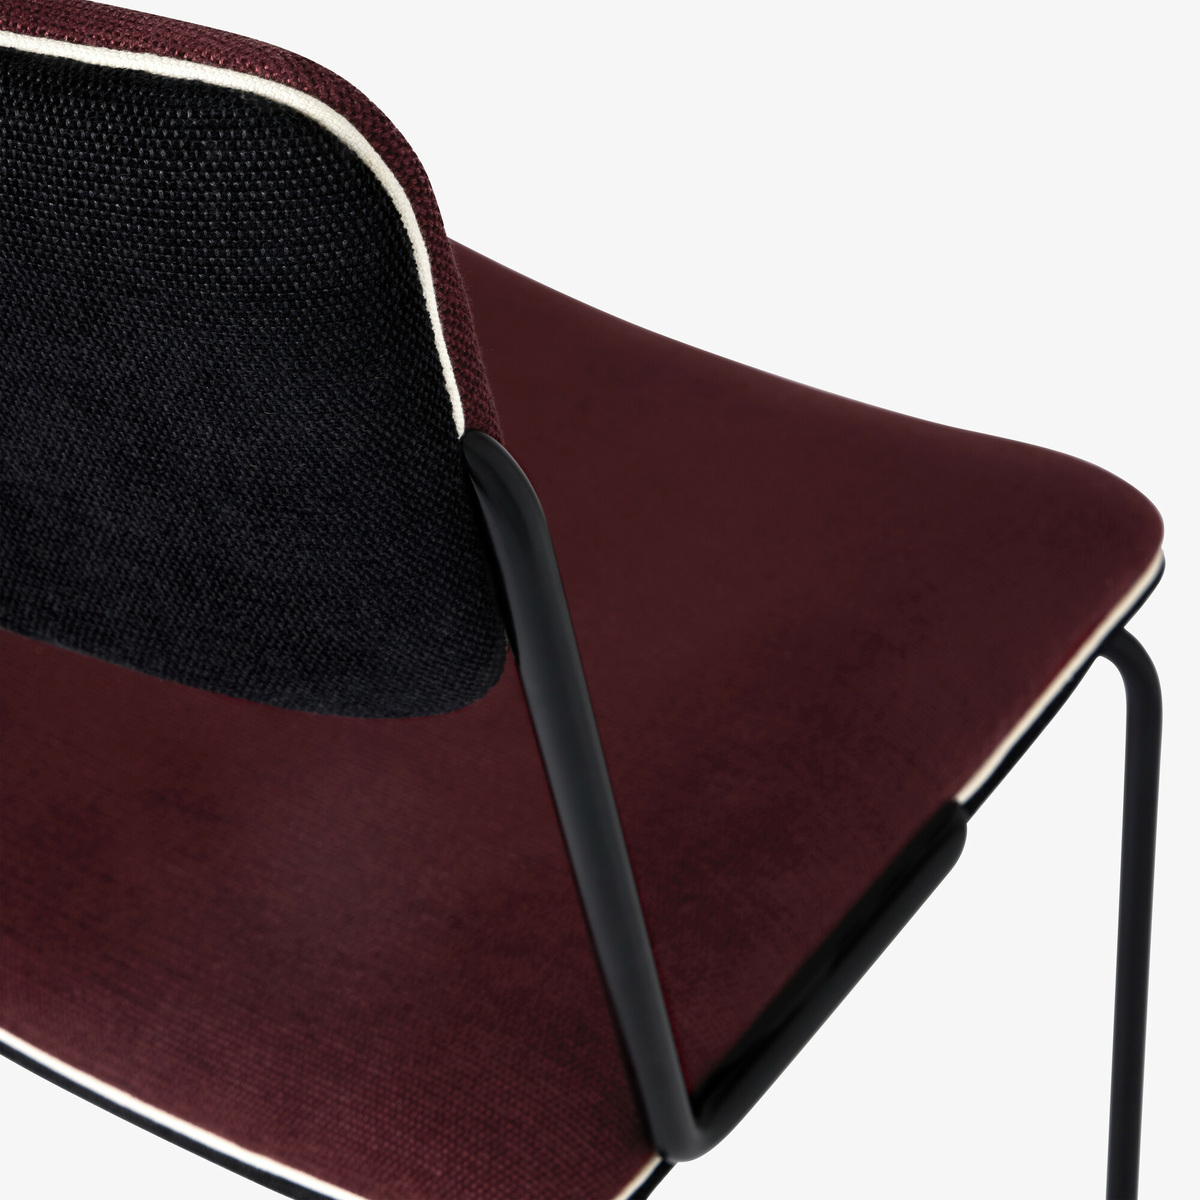 Chaise Double Jeu, Cassis / Noir - H85 x l45 x P43 cm - Coton - image 5